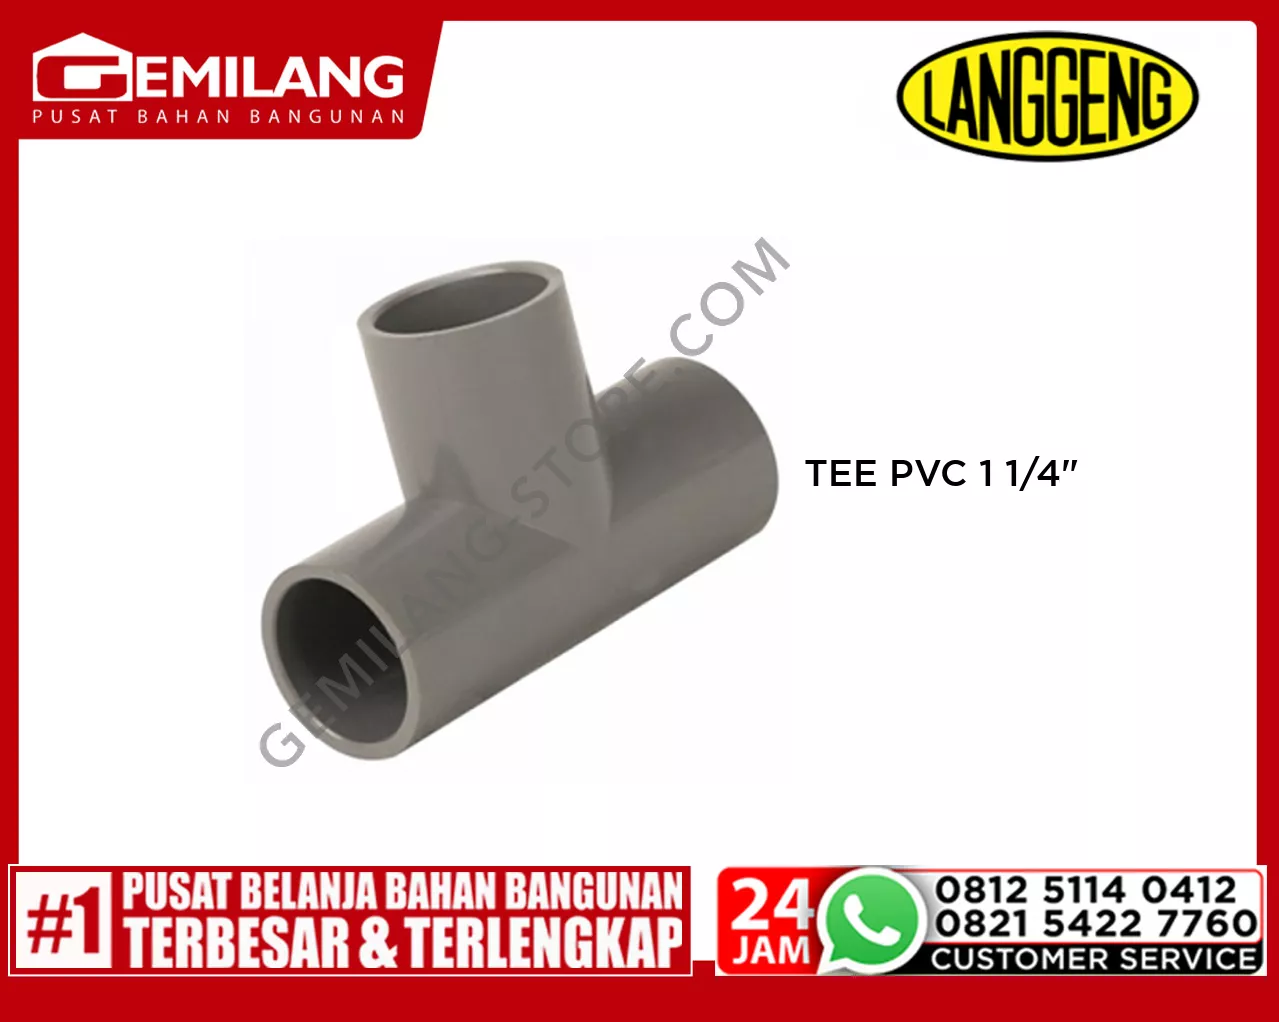 LANGGENG TEE PVC 1 1/4inch